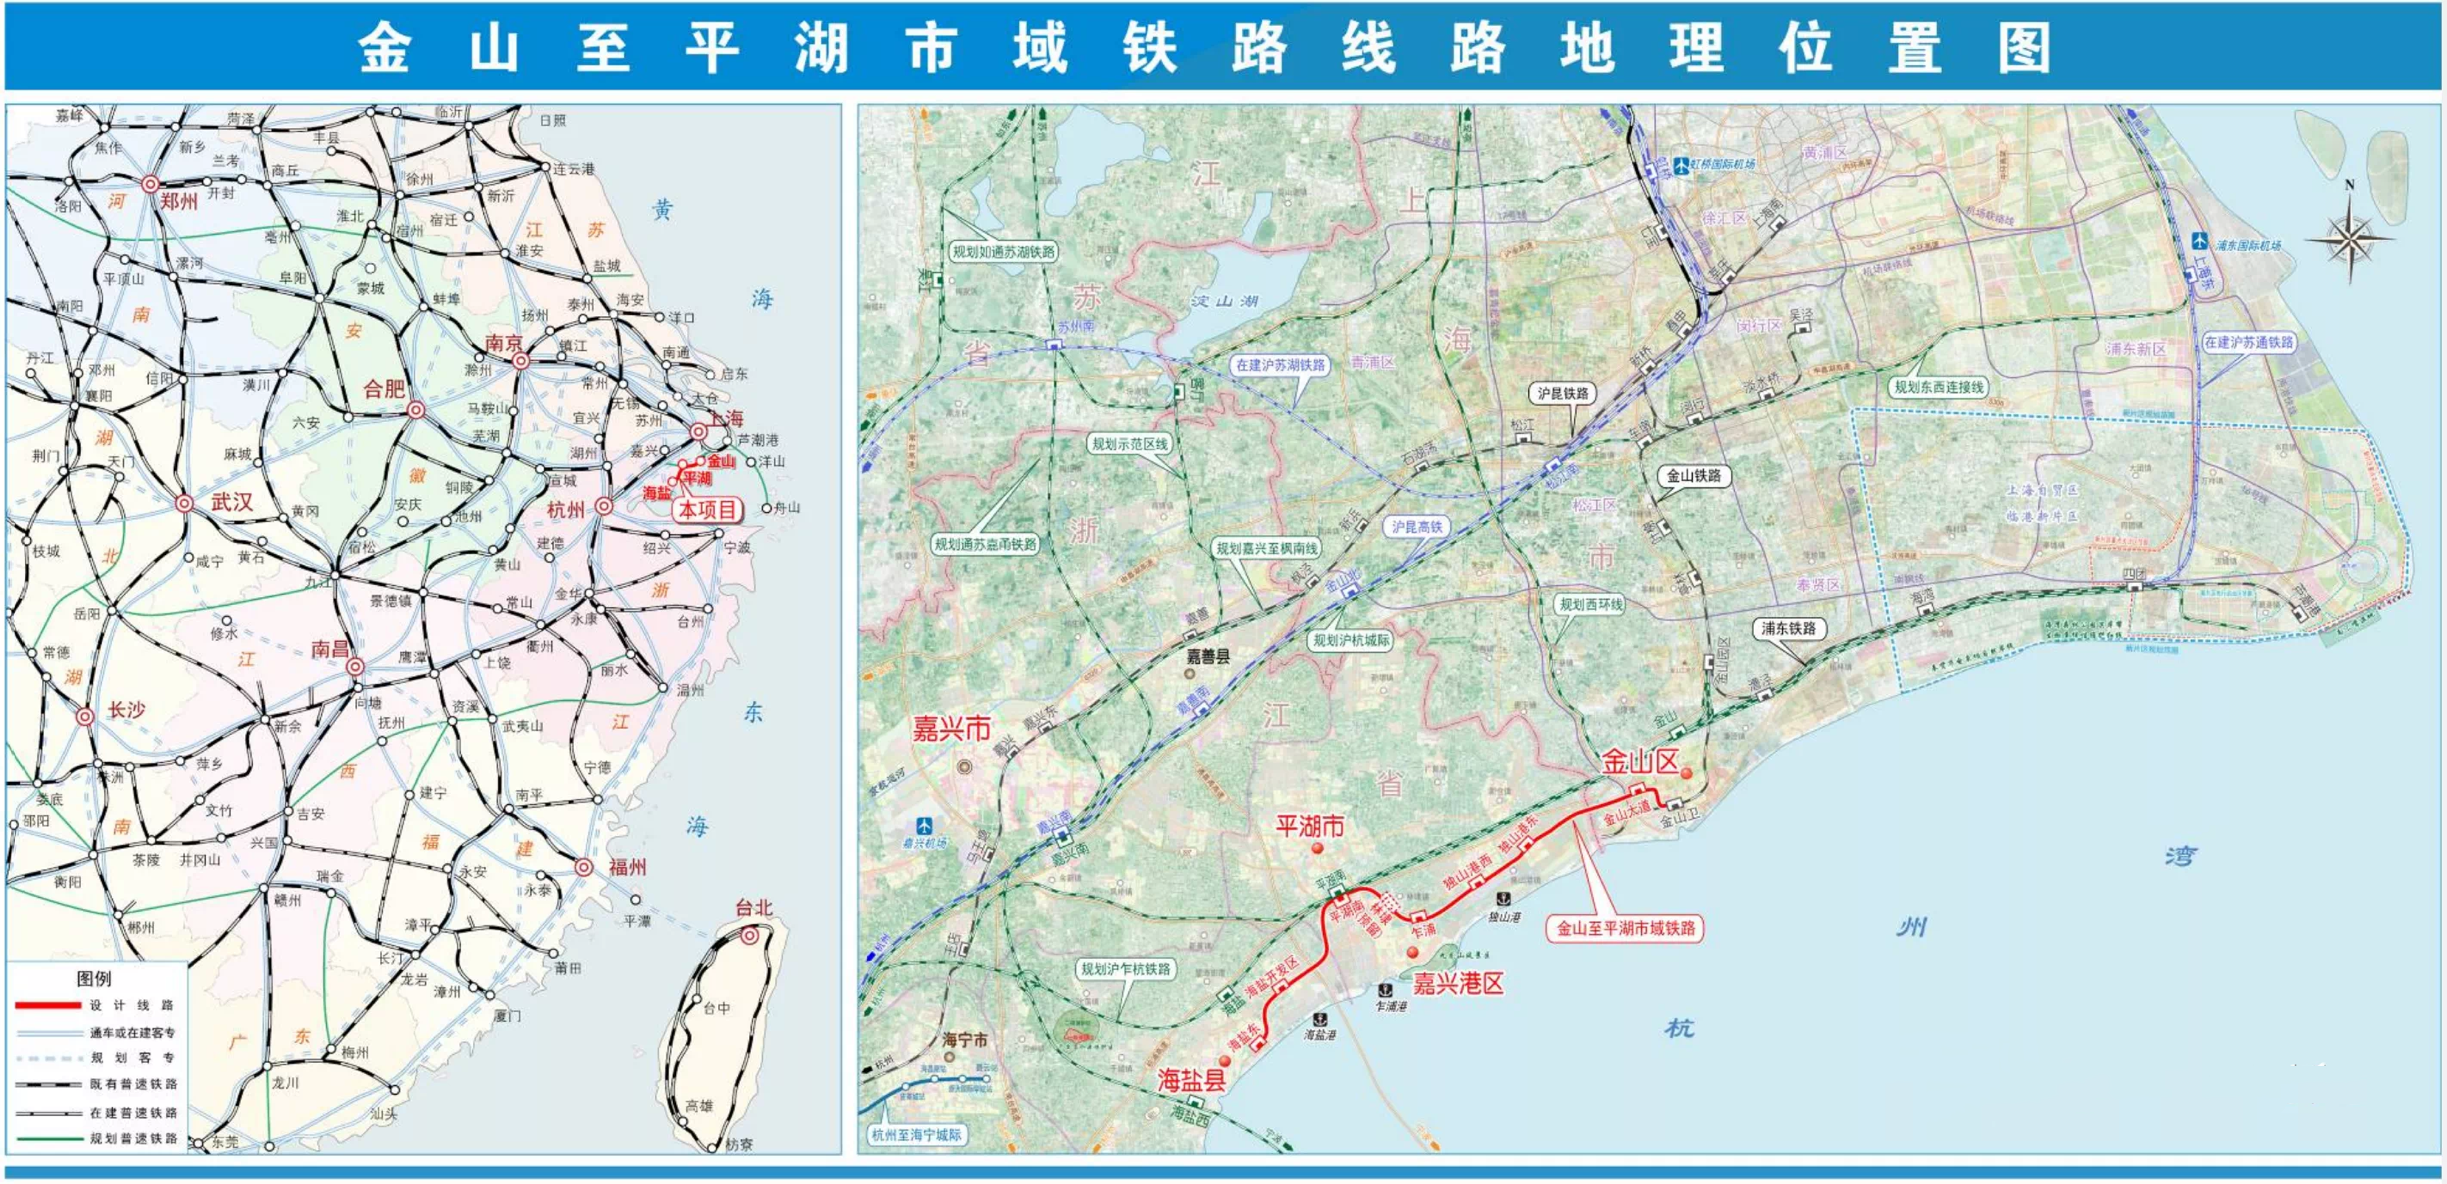 上海金山至平湖海盐市域铁路月底前开工站点设计对外公布